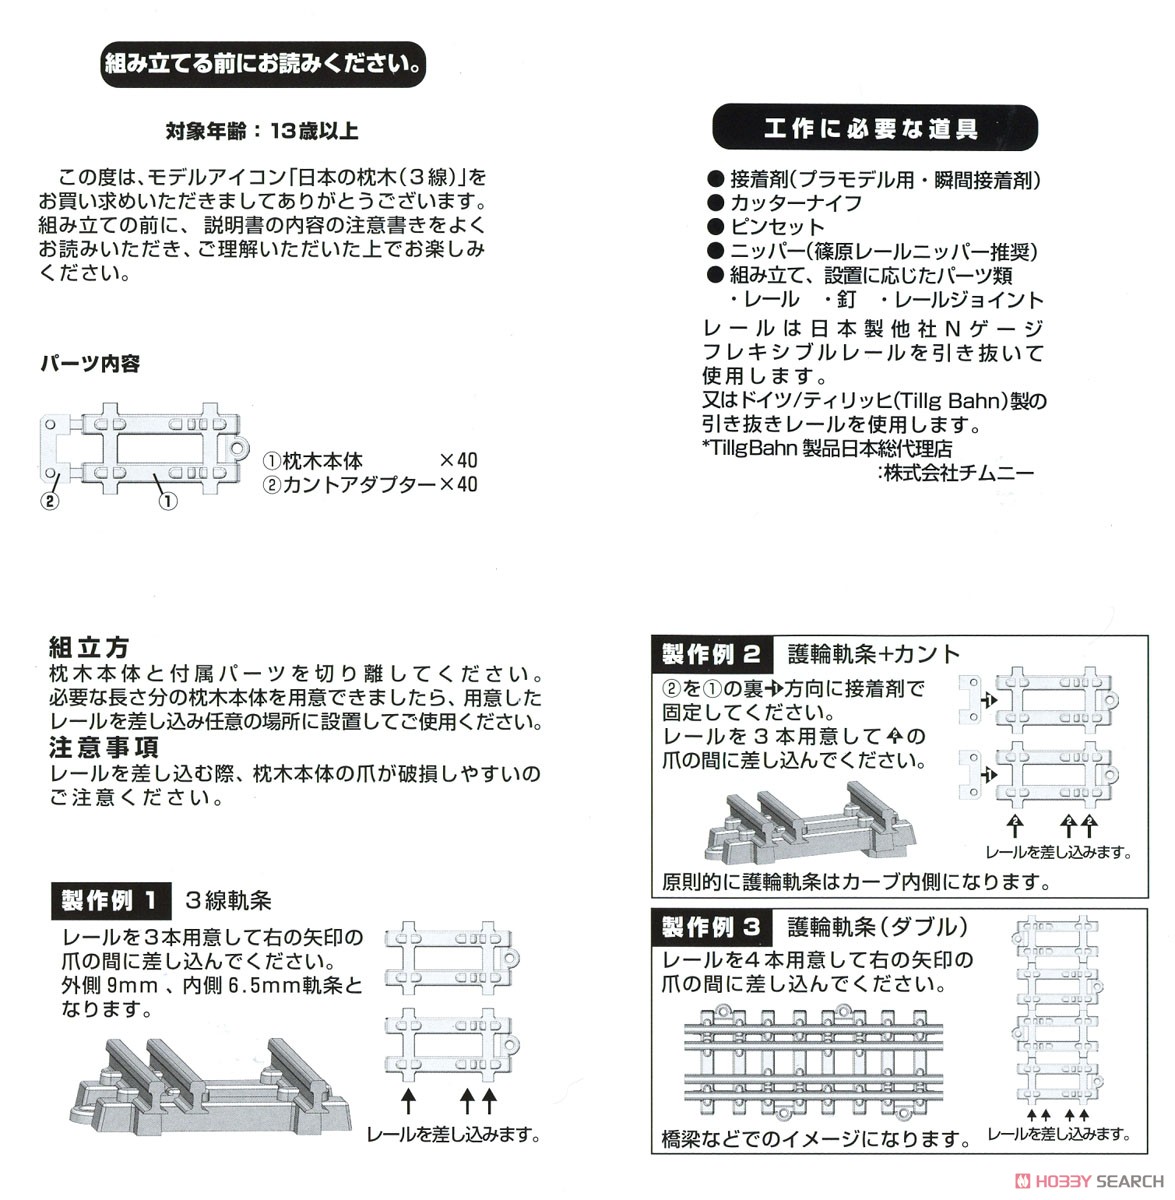 (N) 日本の枕木 (3線) 10ランナー入り (鉄道模型) 設計図1